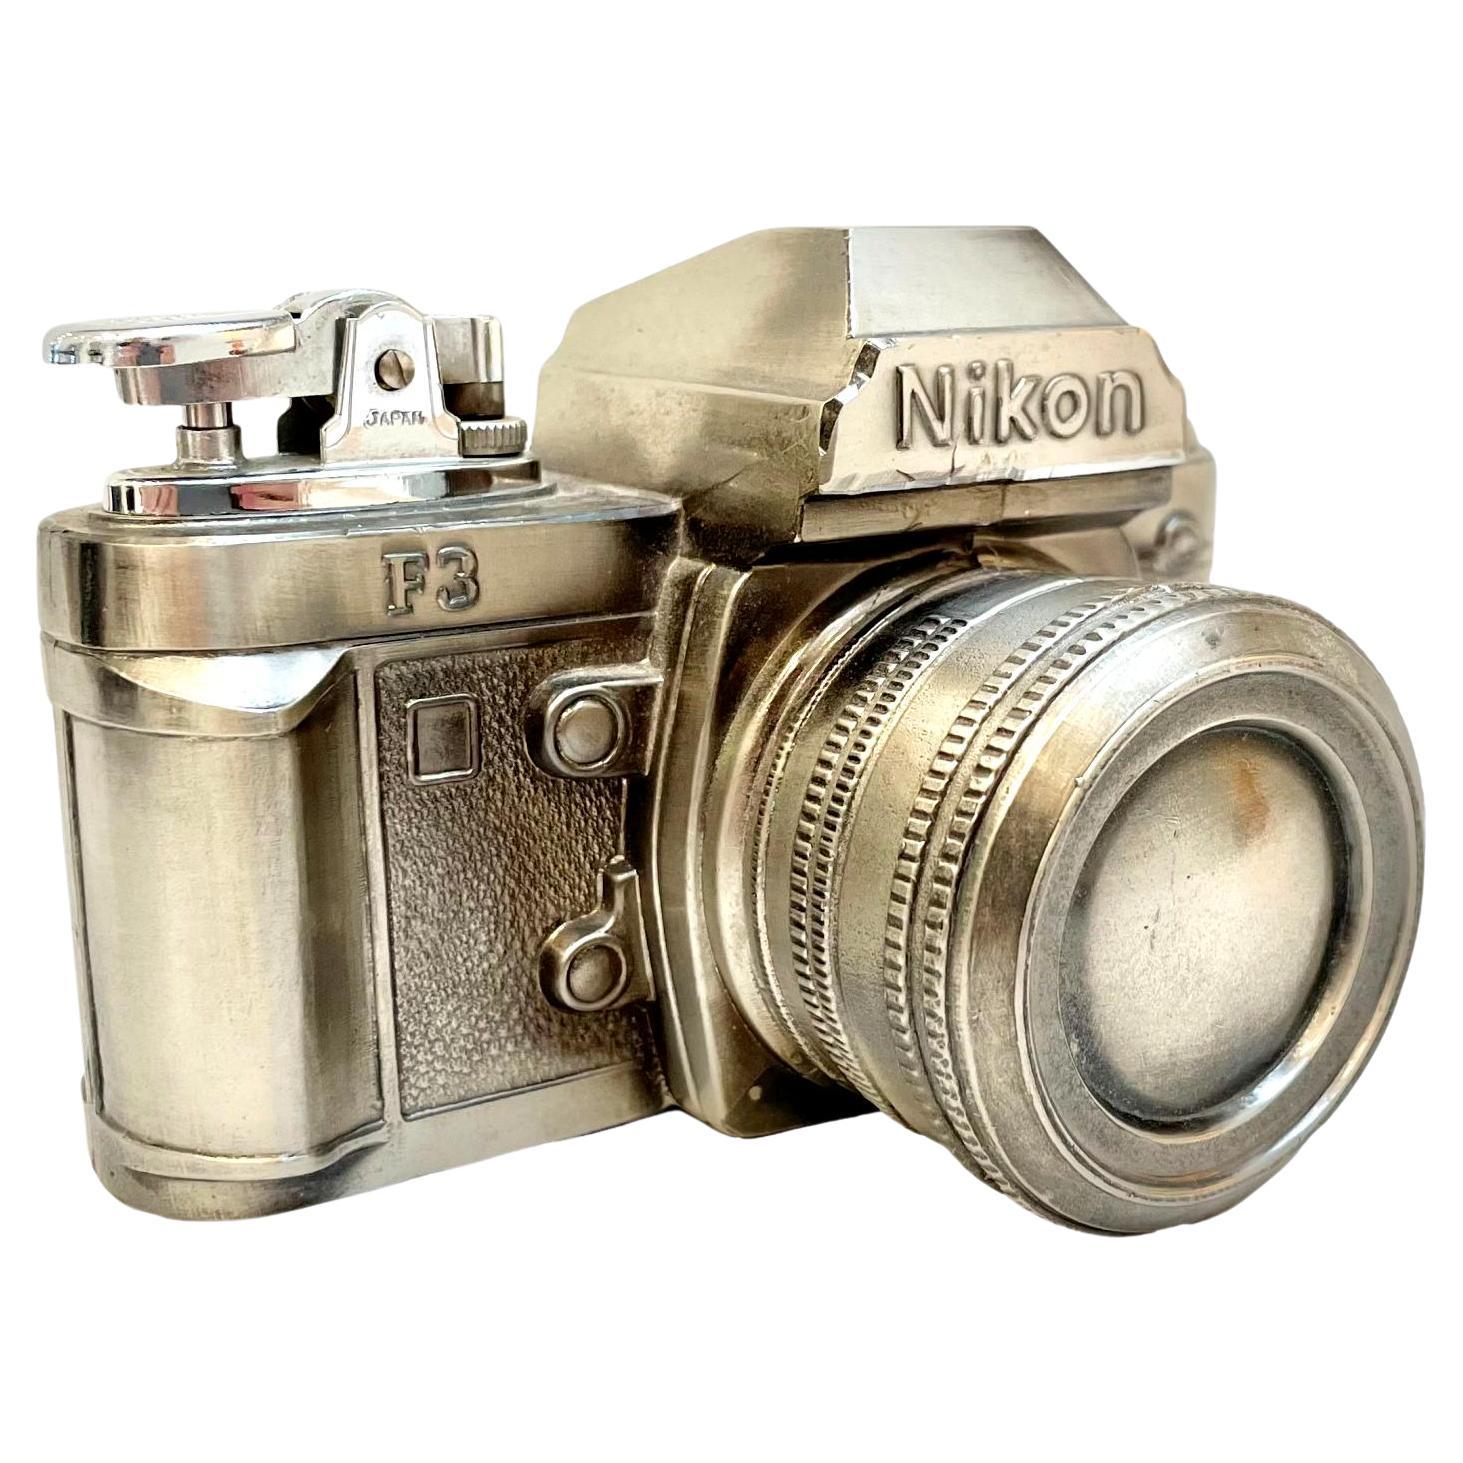 Briquet pour appareil photo Nikon, années 1980, Japon